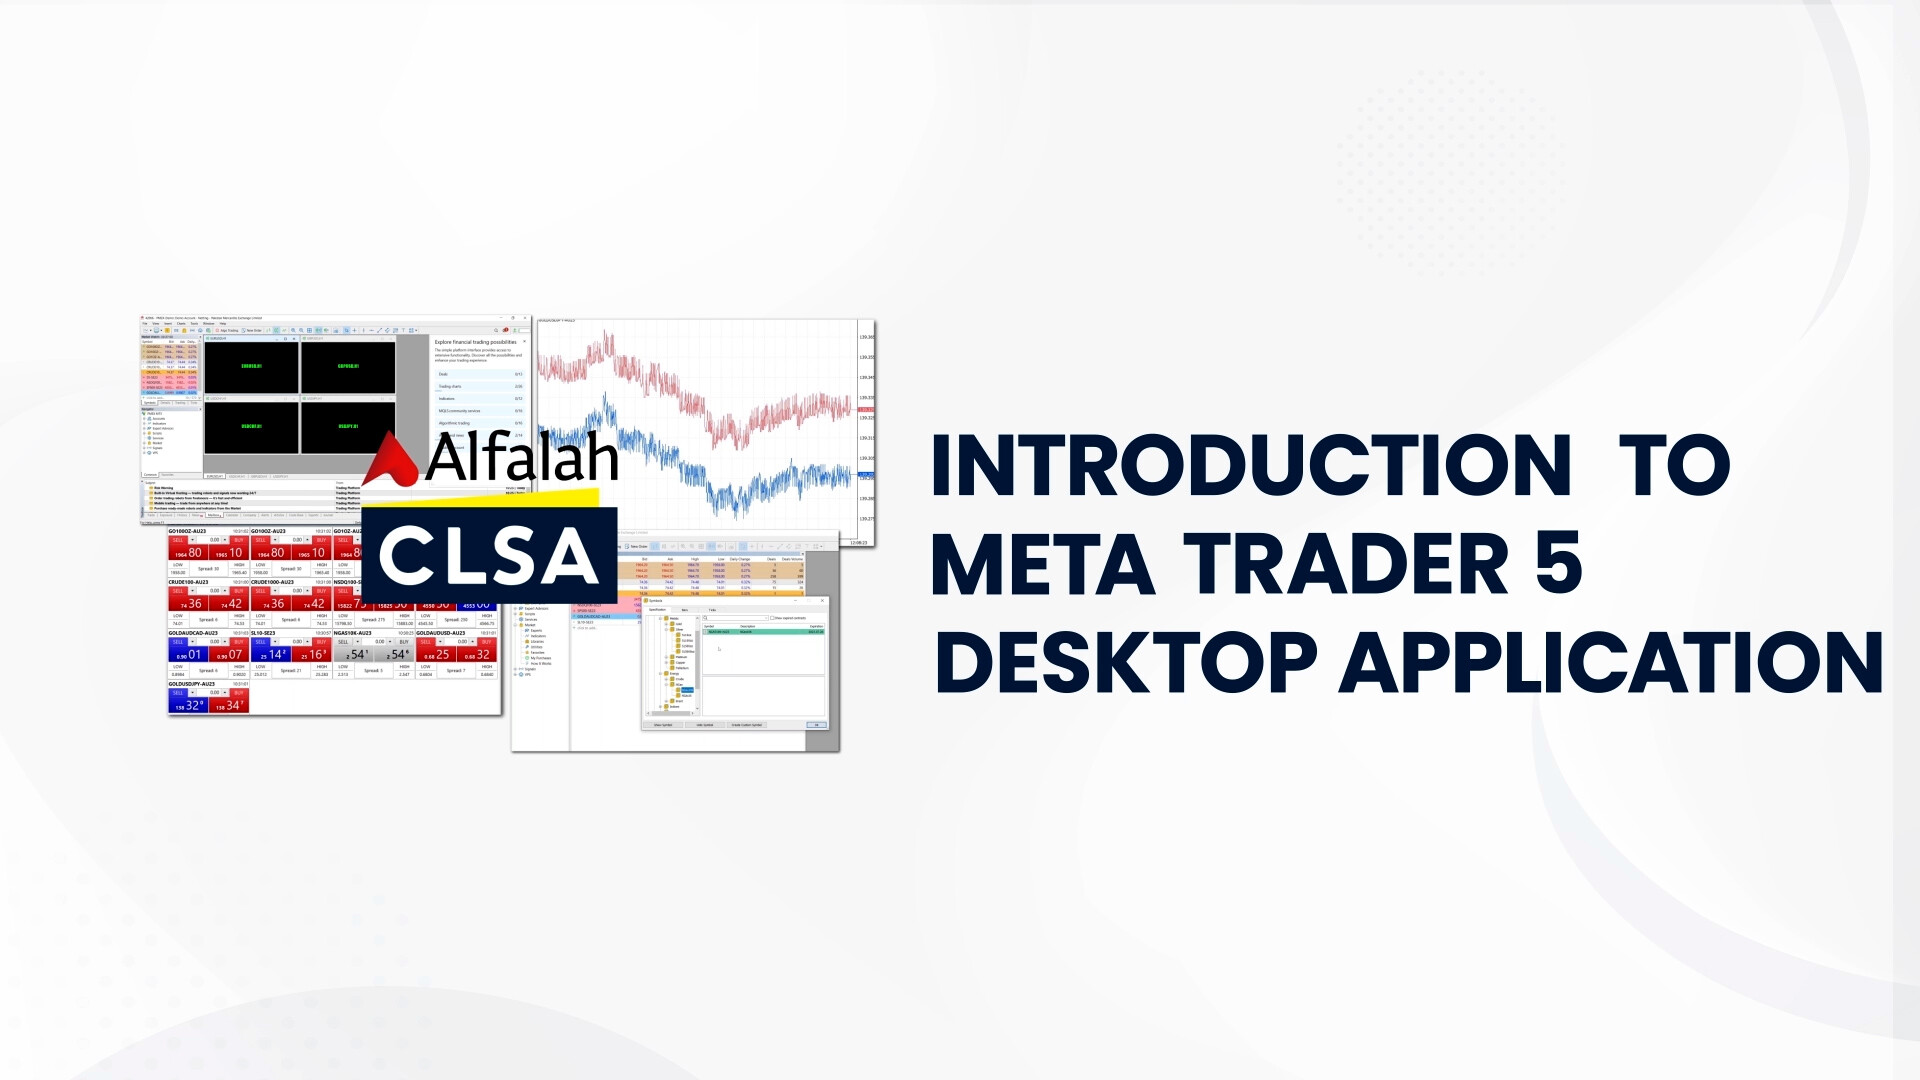 Alfalah CLSA Securities | Introduction to MetaTrader 5 (MT5) Desktop Application | Jan 24